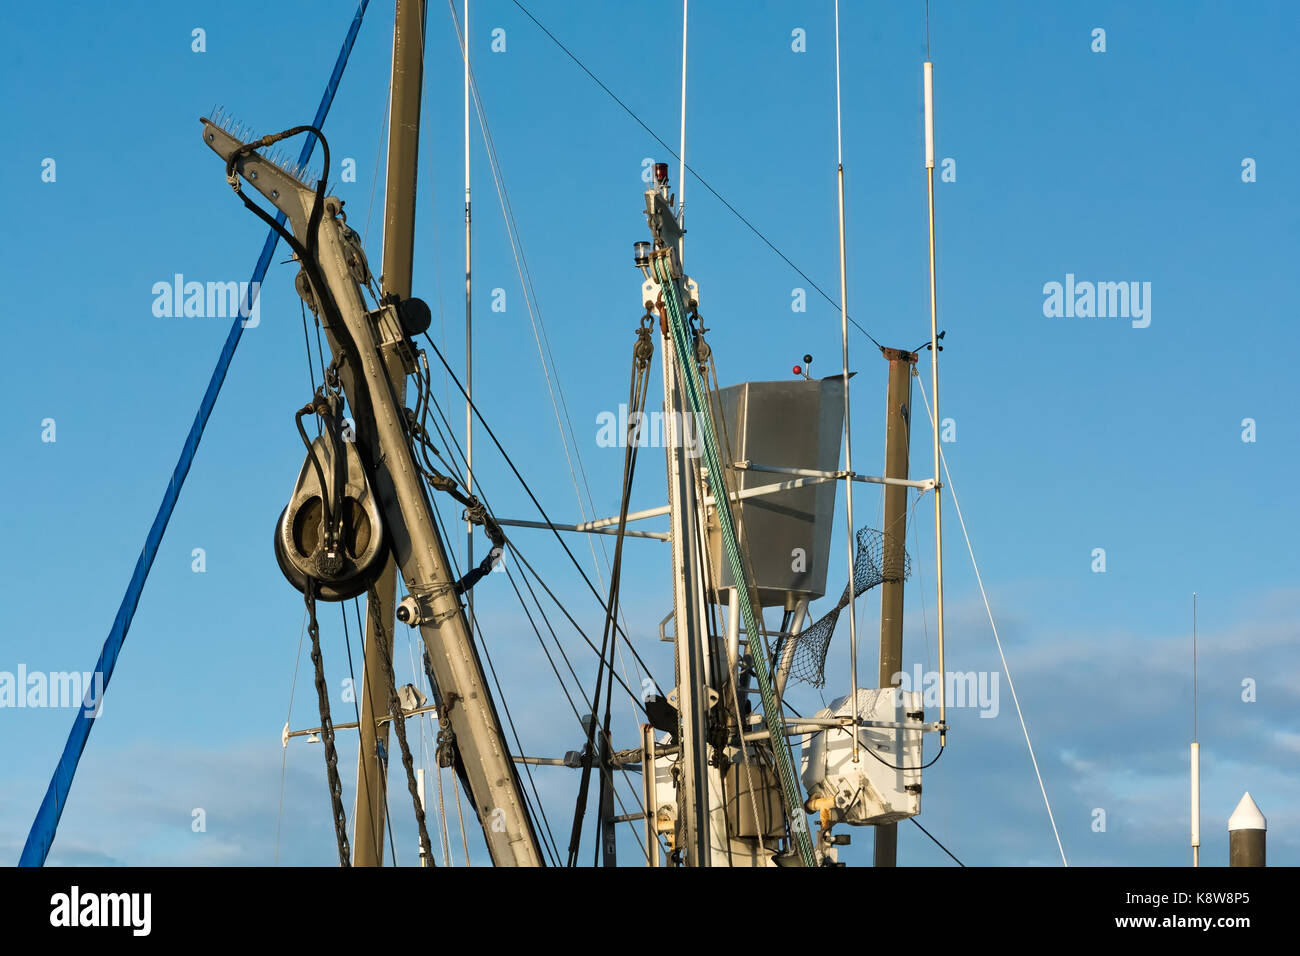 Die Kontrollen auf das Crow's Nest eines Alaskan Trawler befindet sich in der Takelage und Ausrüstung coverning die Oberseiten der Mast des Schiffes und Ausleger eingebettet. Stockfoto